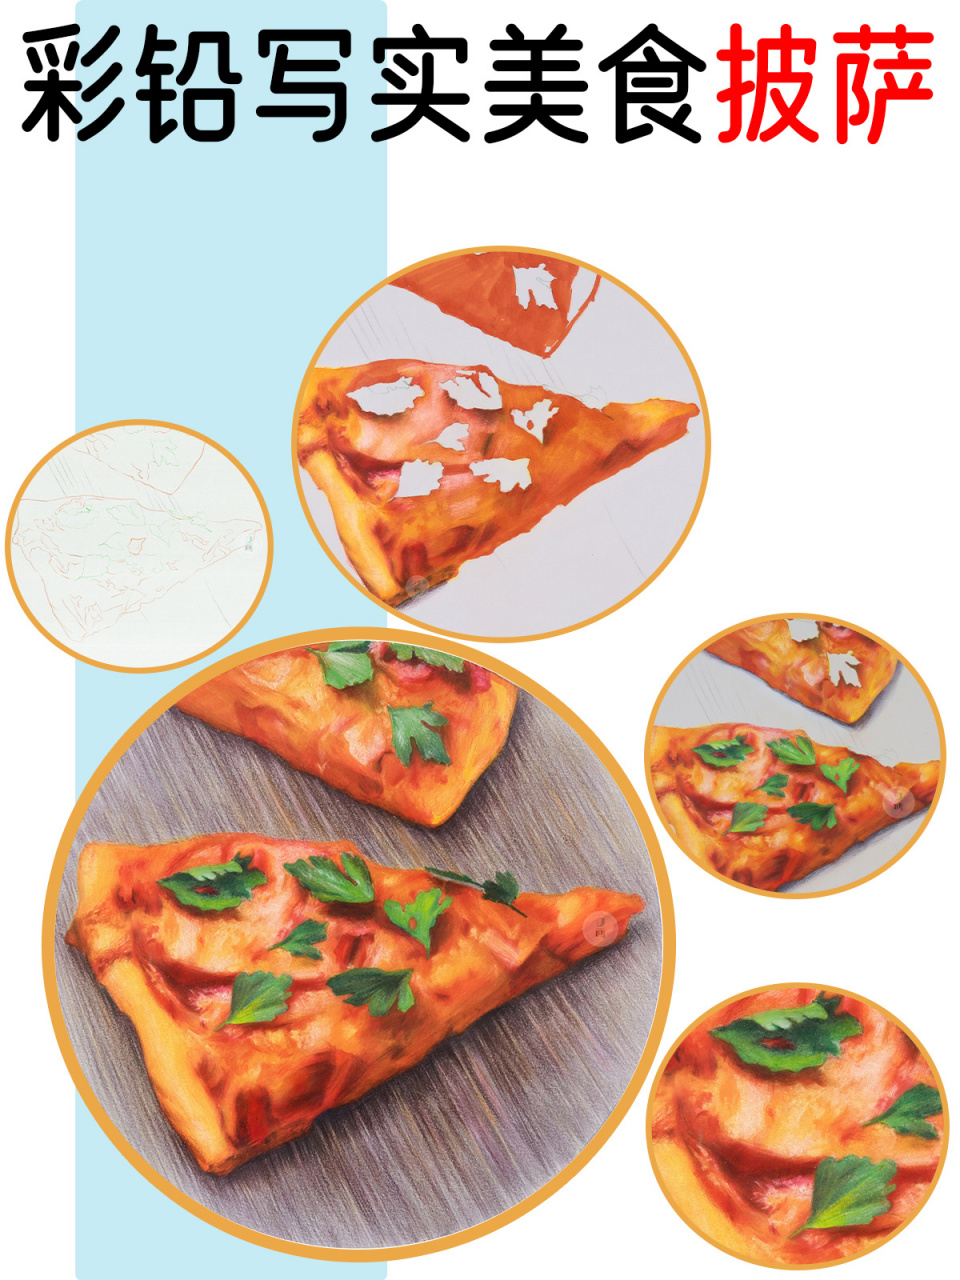 彩铅——美味披萨93 来之不易的五一假期,怎么能不来块披萨